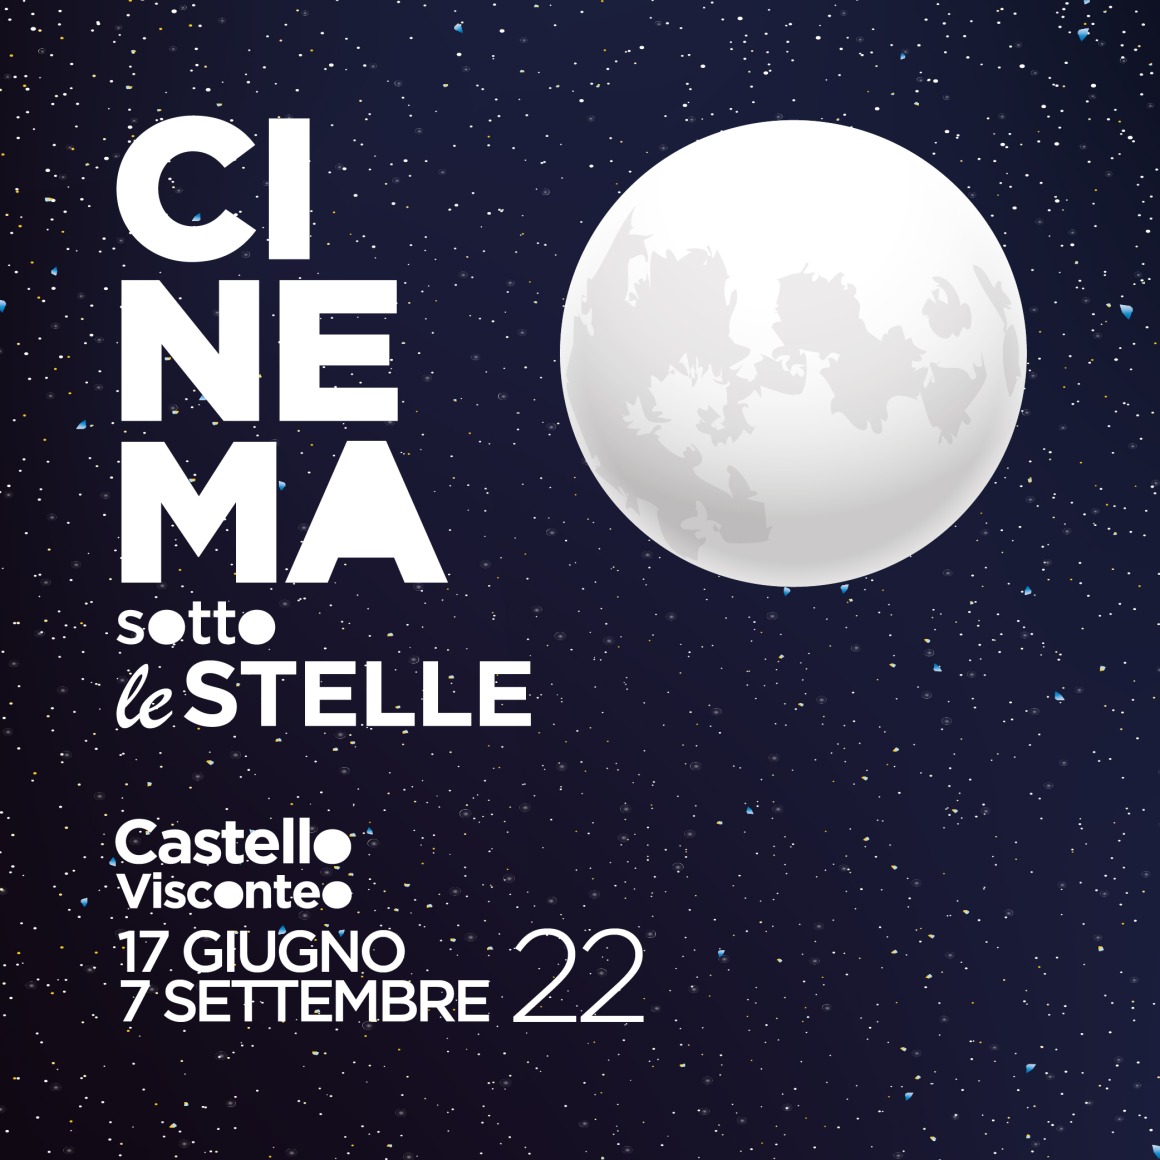 Cinema sotto le stelle – Al Castello Visconteo dal 17 giugno al 7 settembre